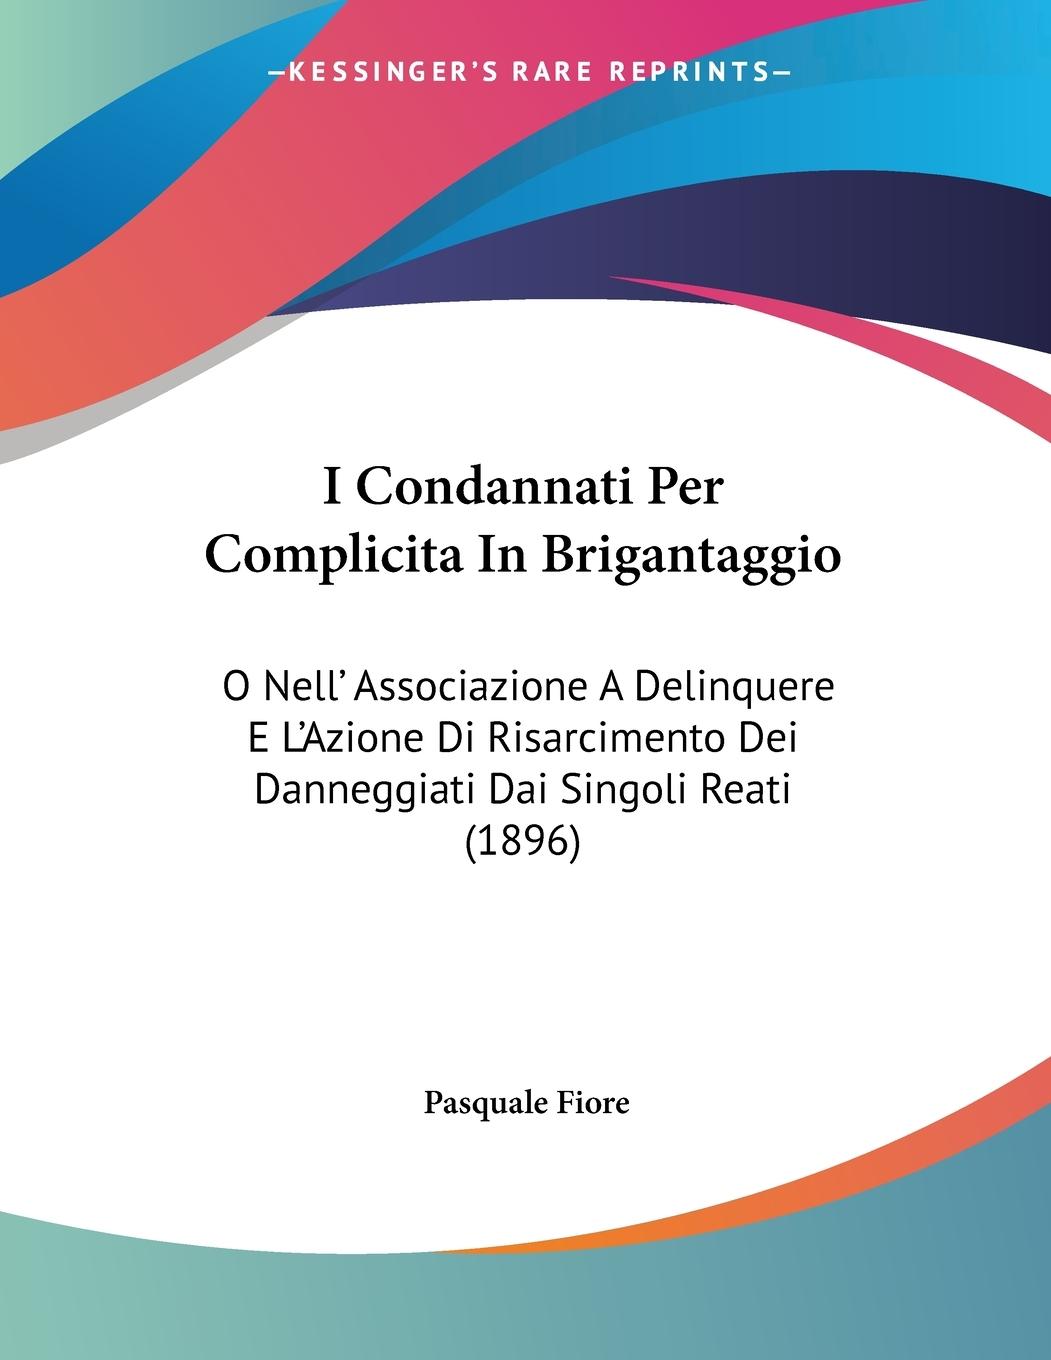 I Condannati Per Complicita In Brigantaggio - Fiore, Pasquale